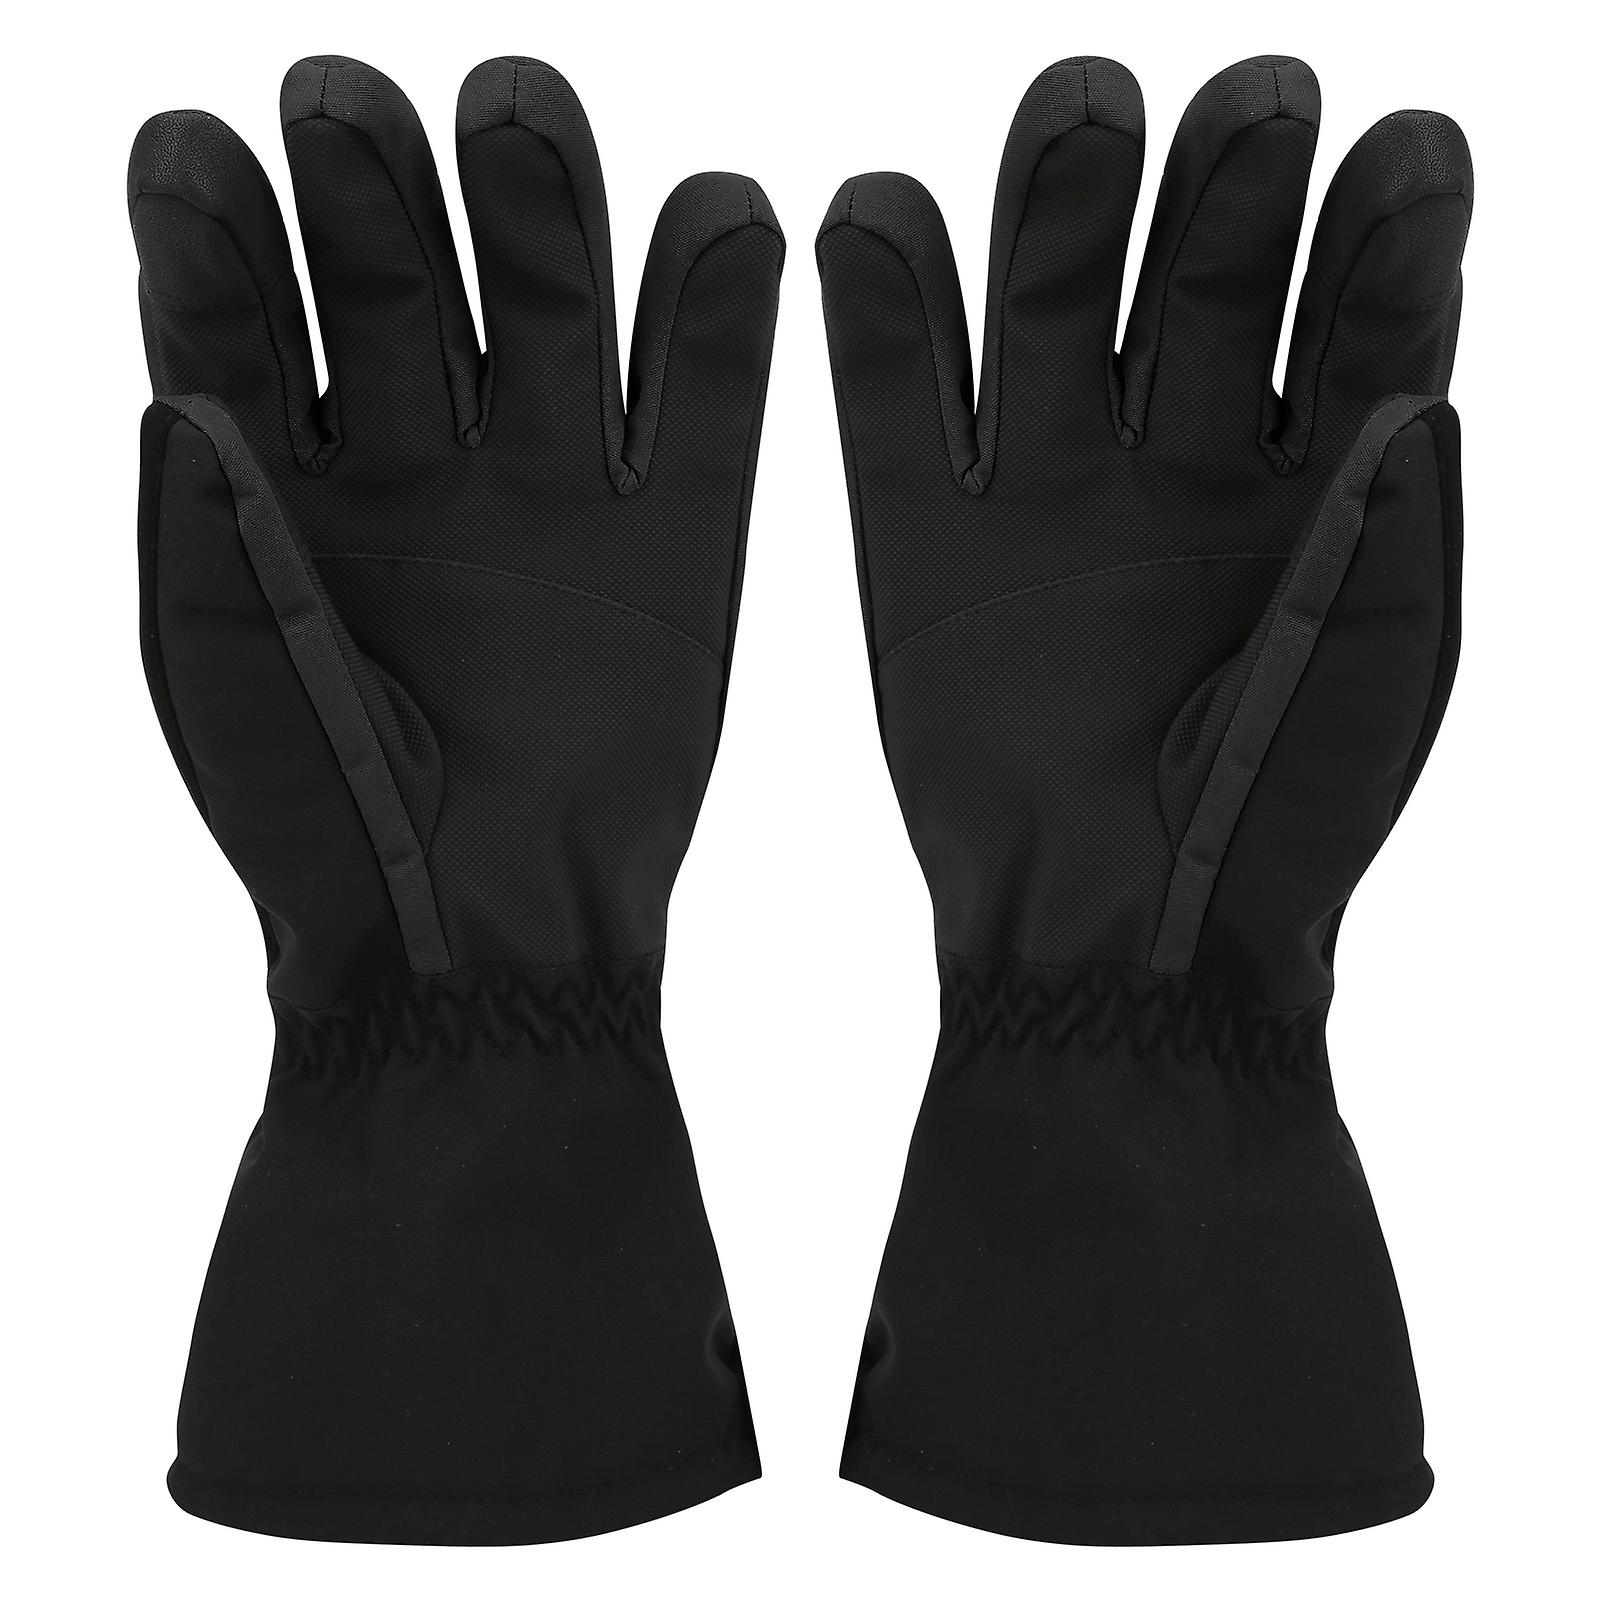 1pair Winter Outdoor Sport Skiing Brushed Lining Waterproof Keep Warm Antislip Glovesxl Black